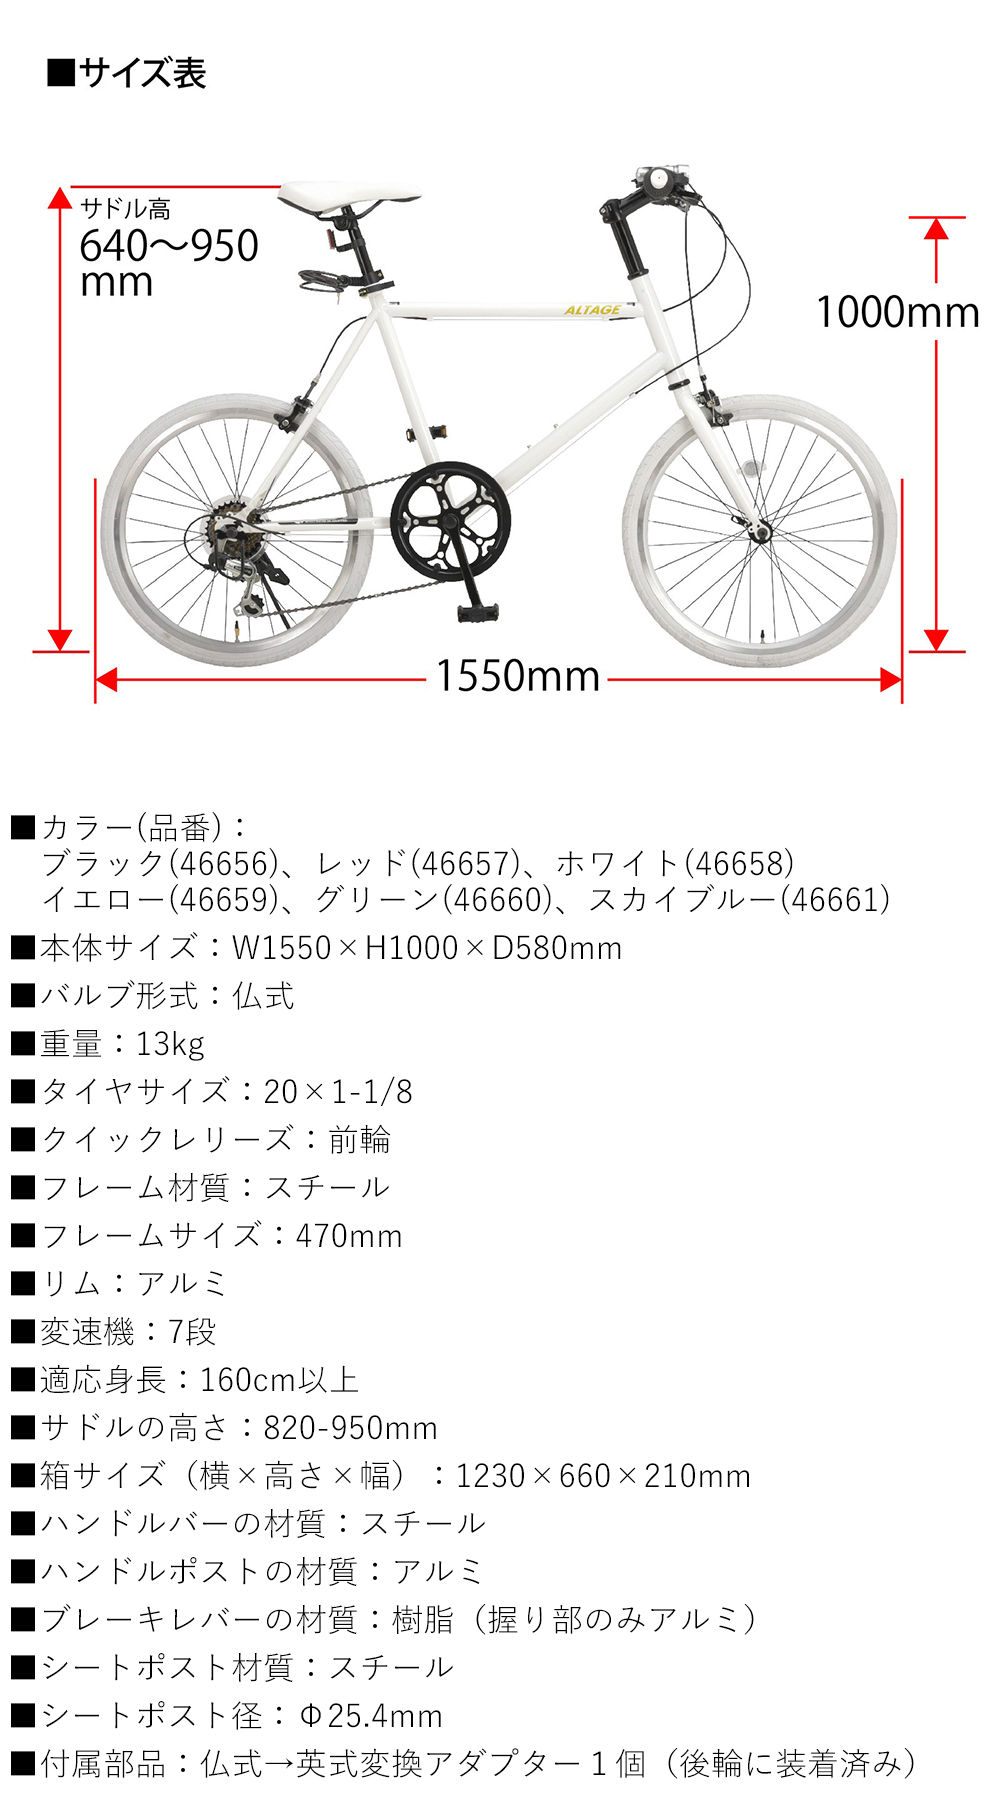 ミニベロ 小径自転車 20インチ シマノ7段変速 Fクイックリリース LEDライト・カギセット 軽量 街乗りサイクル アルテージ ALTAGE AMV- 001 amv001-rd 自転車通販 通販 